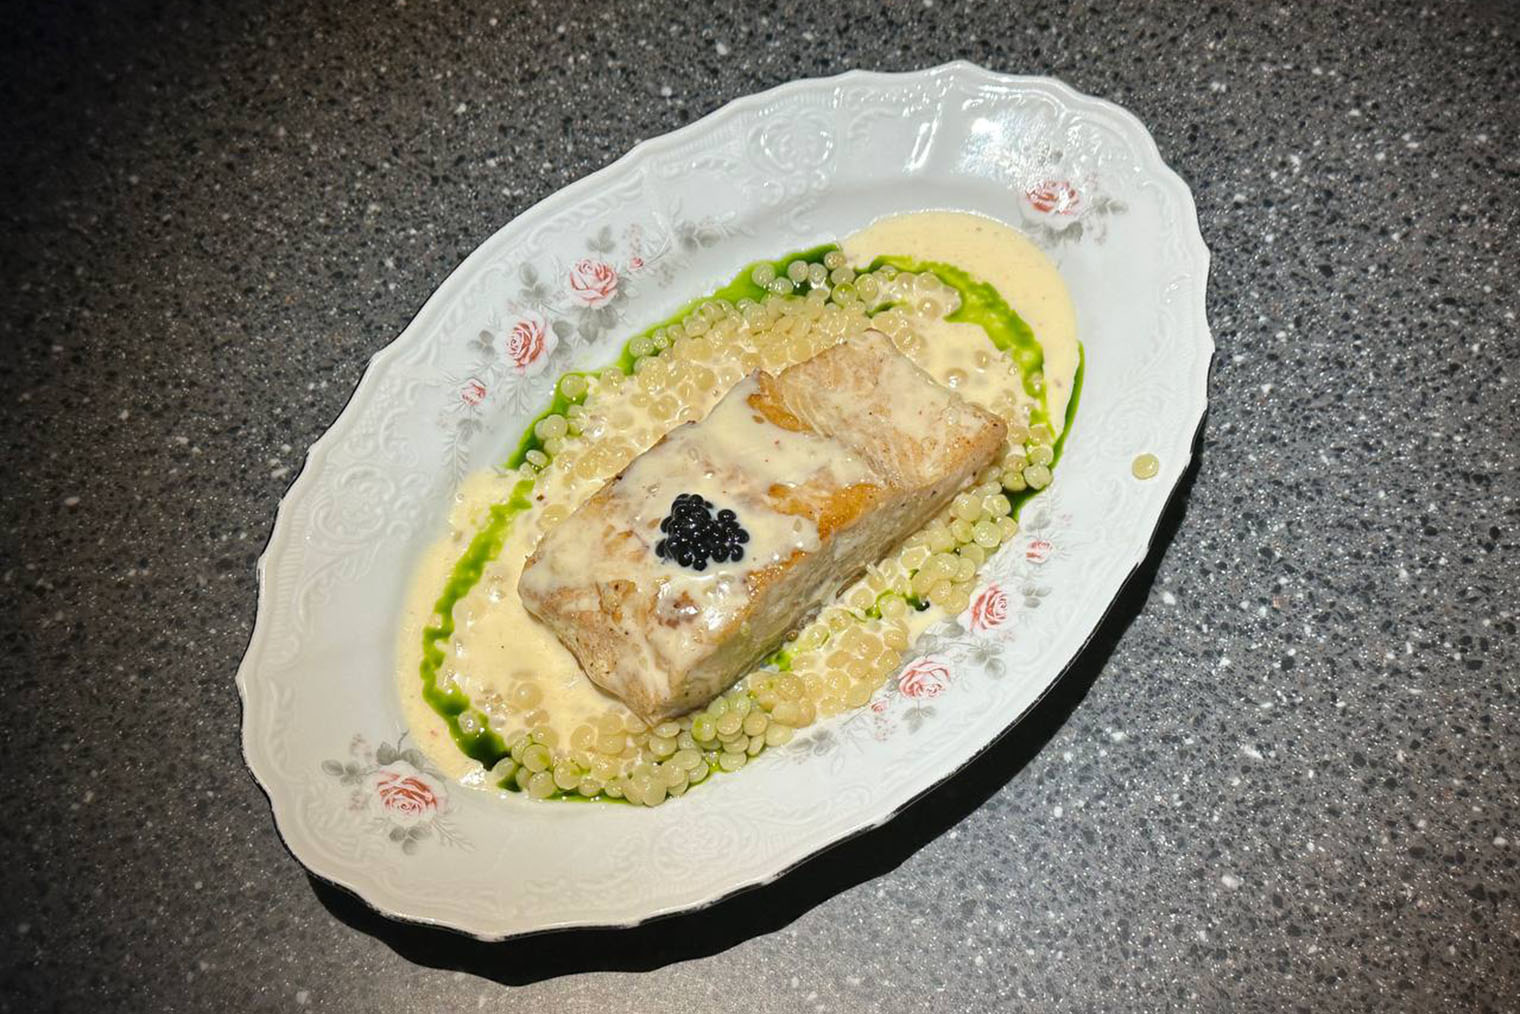 Посуда и подача в «Честной рыбе» красивые. Счет за ужин — 1570 ₽ за три блюда и напиток